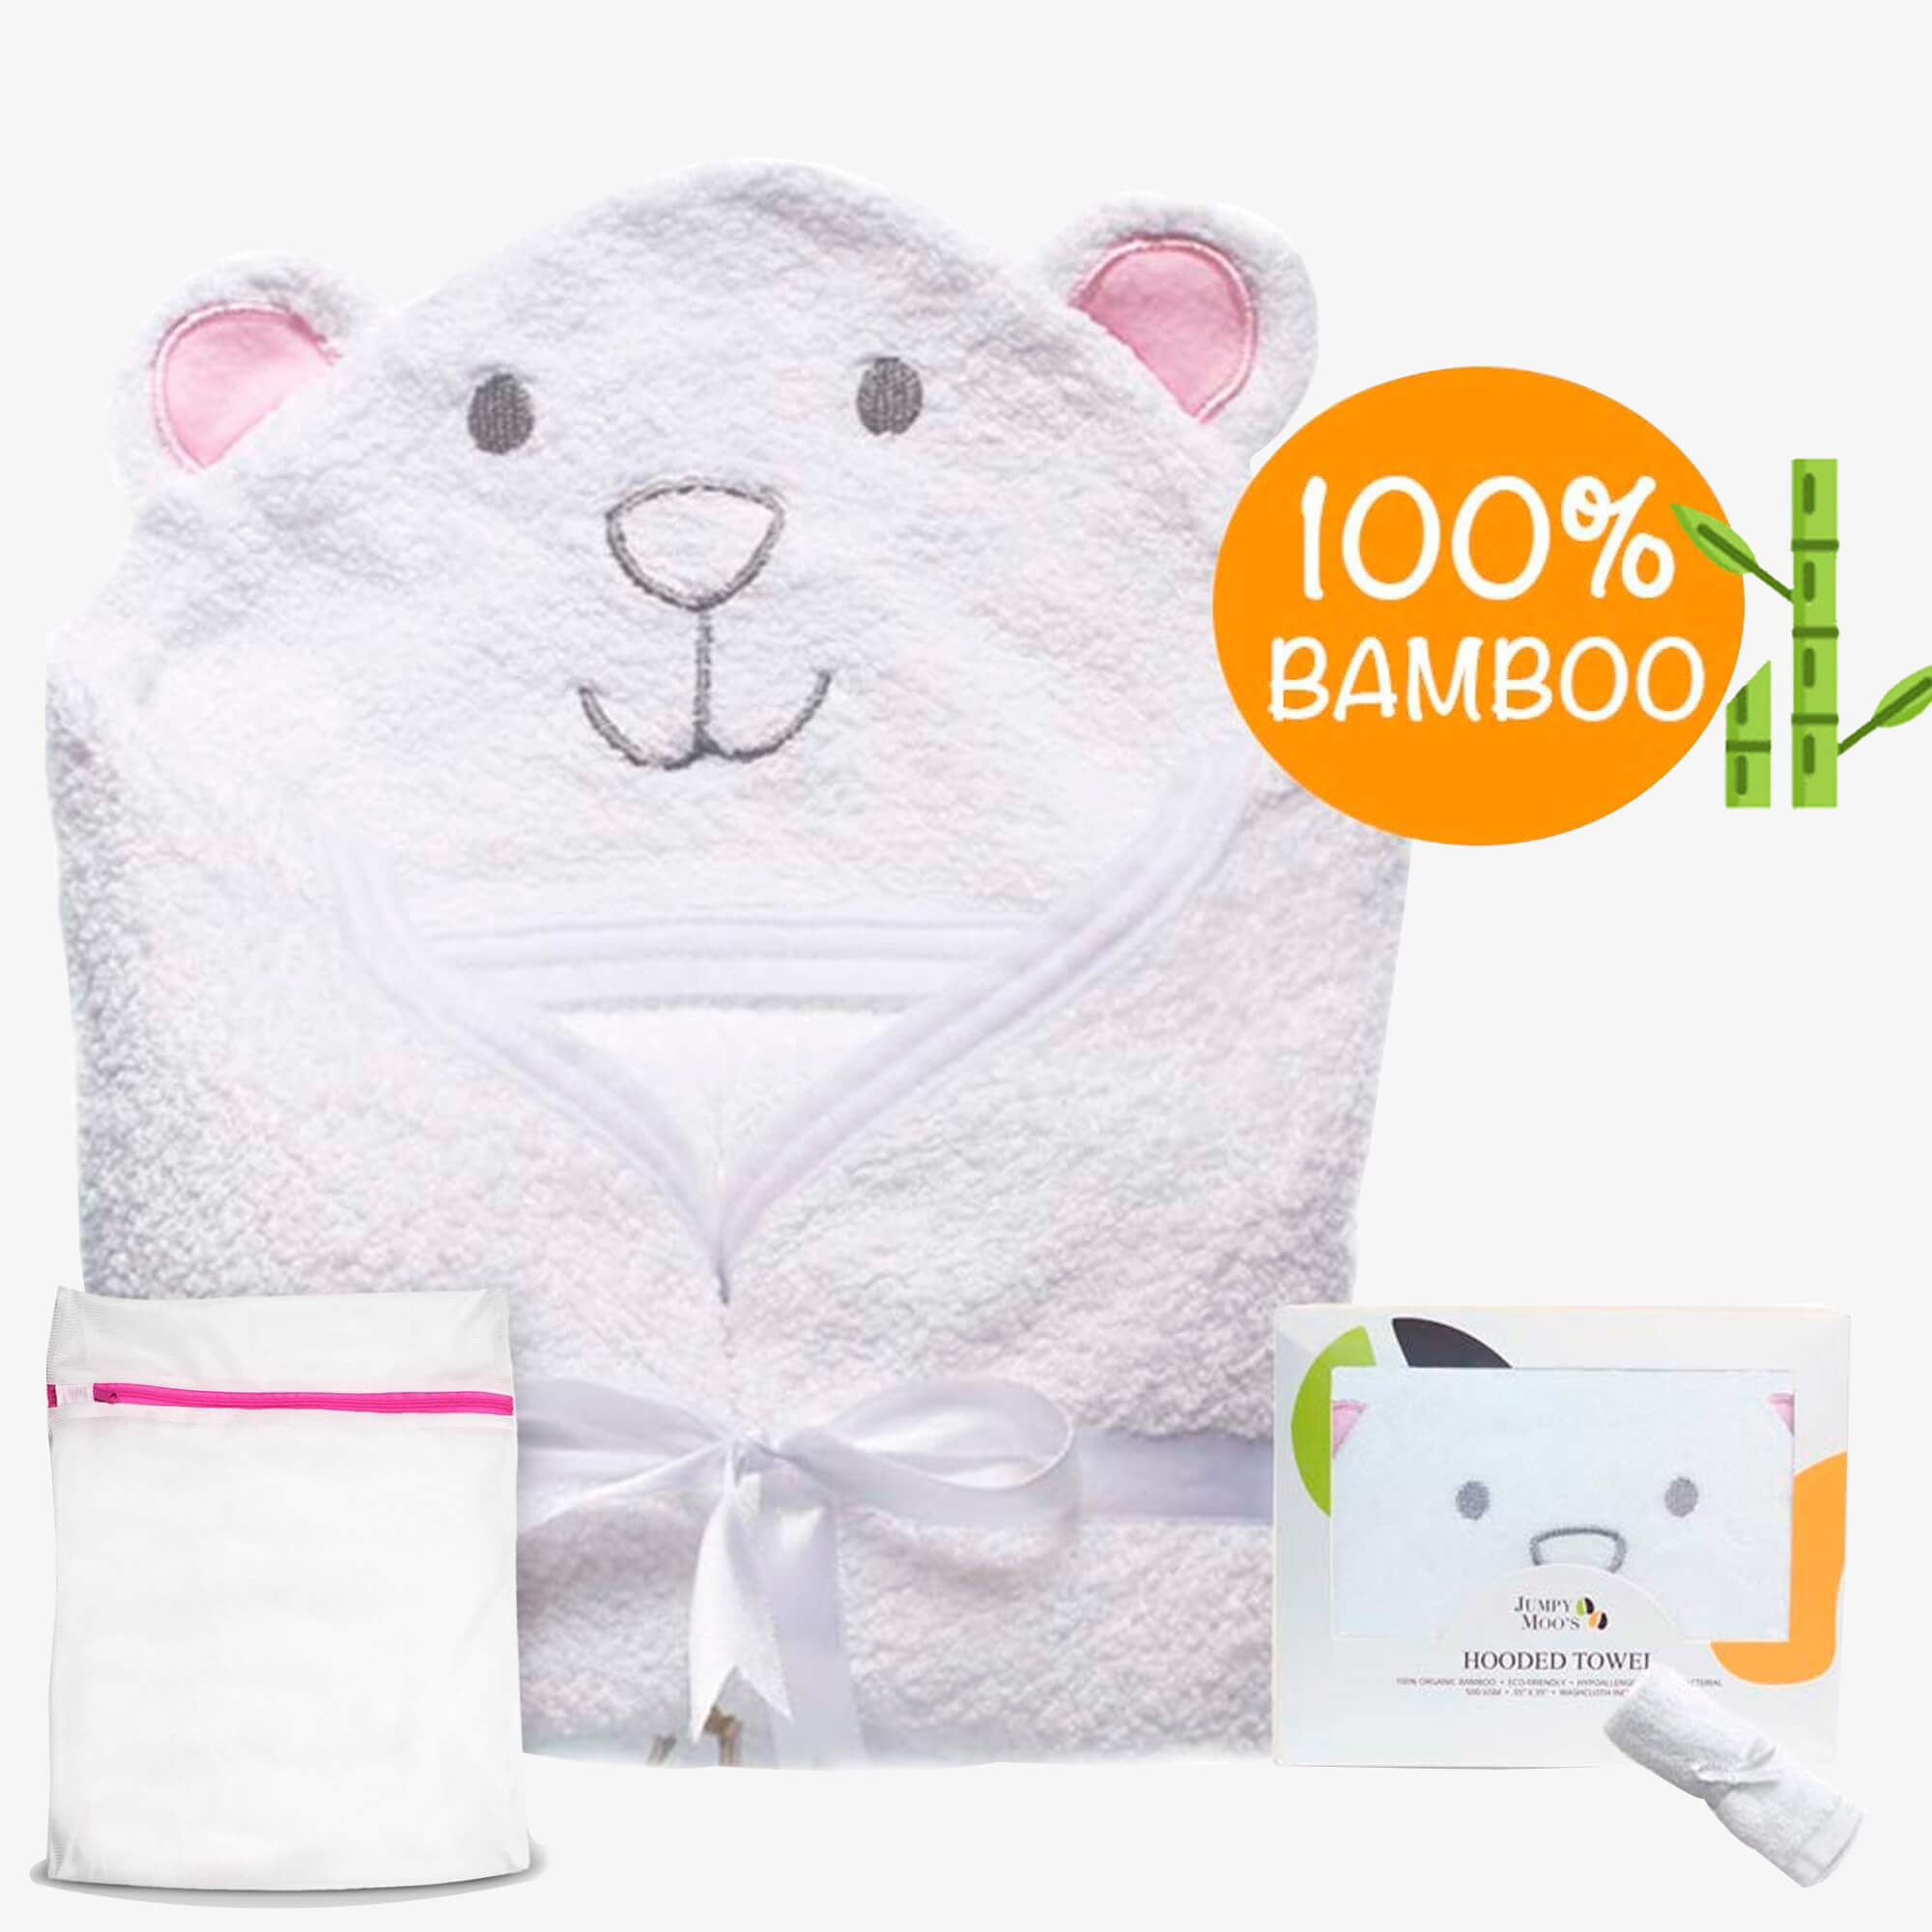 Baby Hooded Towel Set | Best Baby Towels at Jumpy Moos